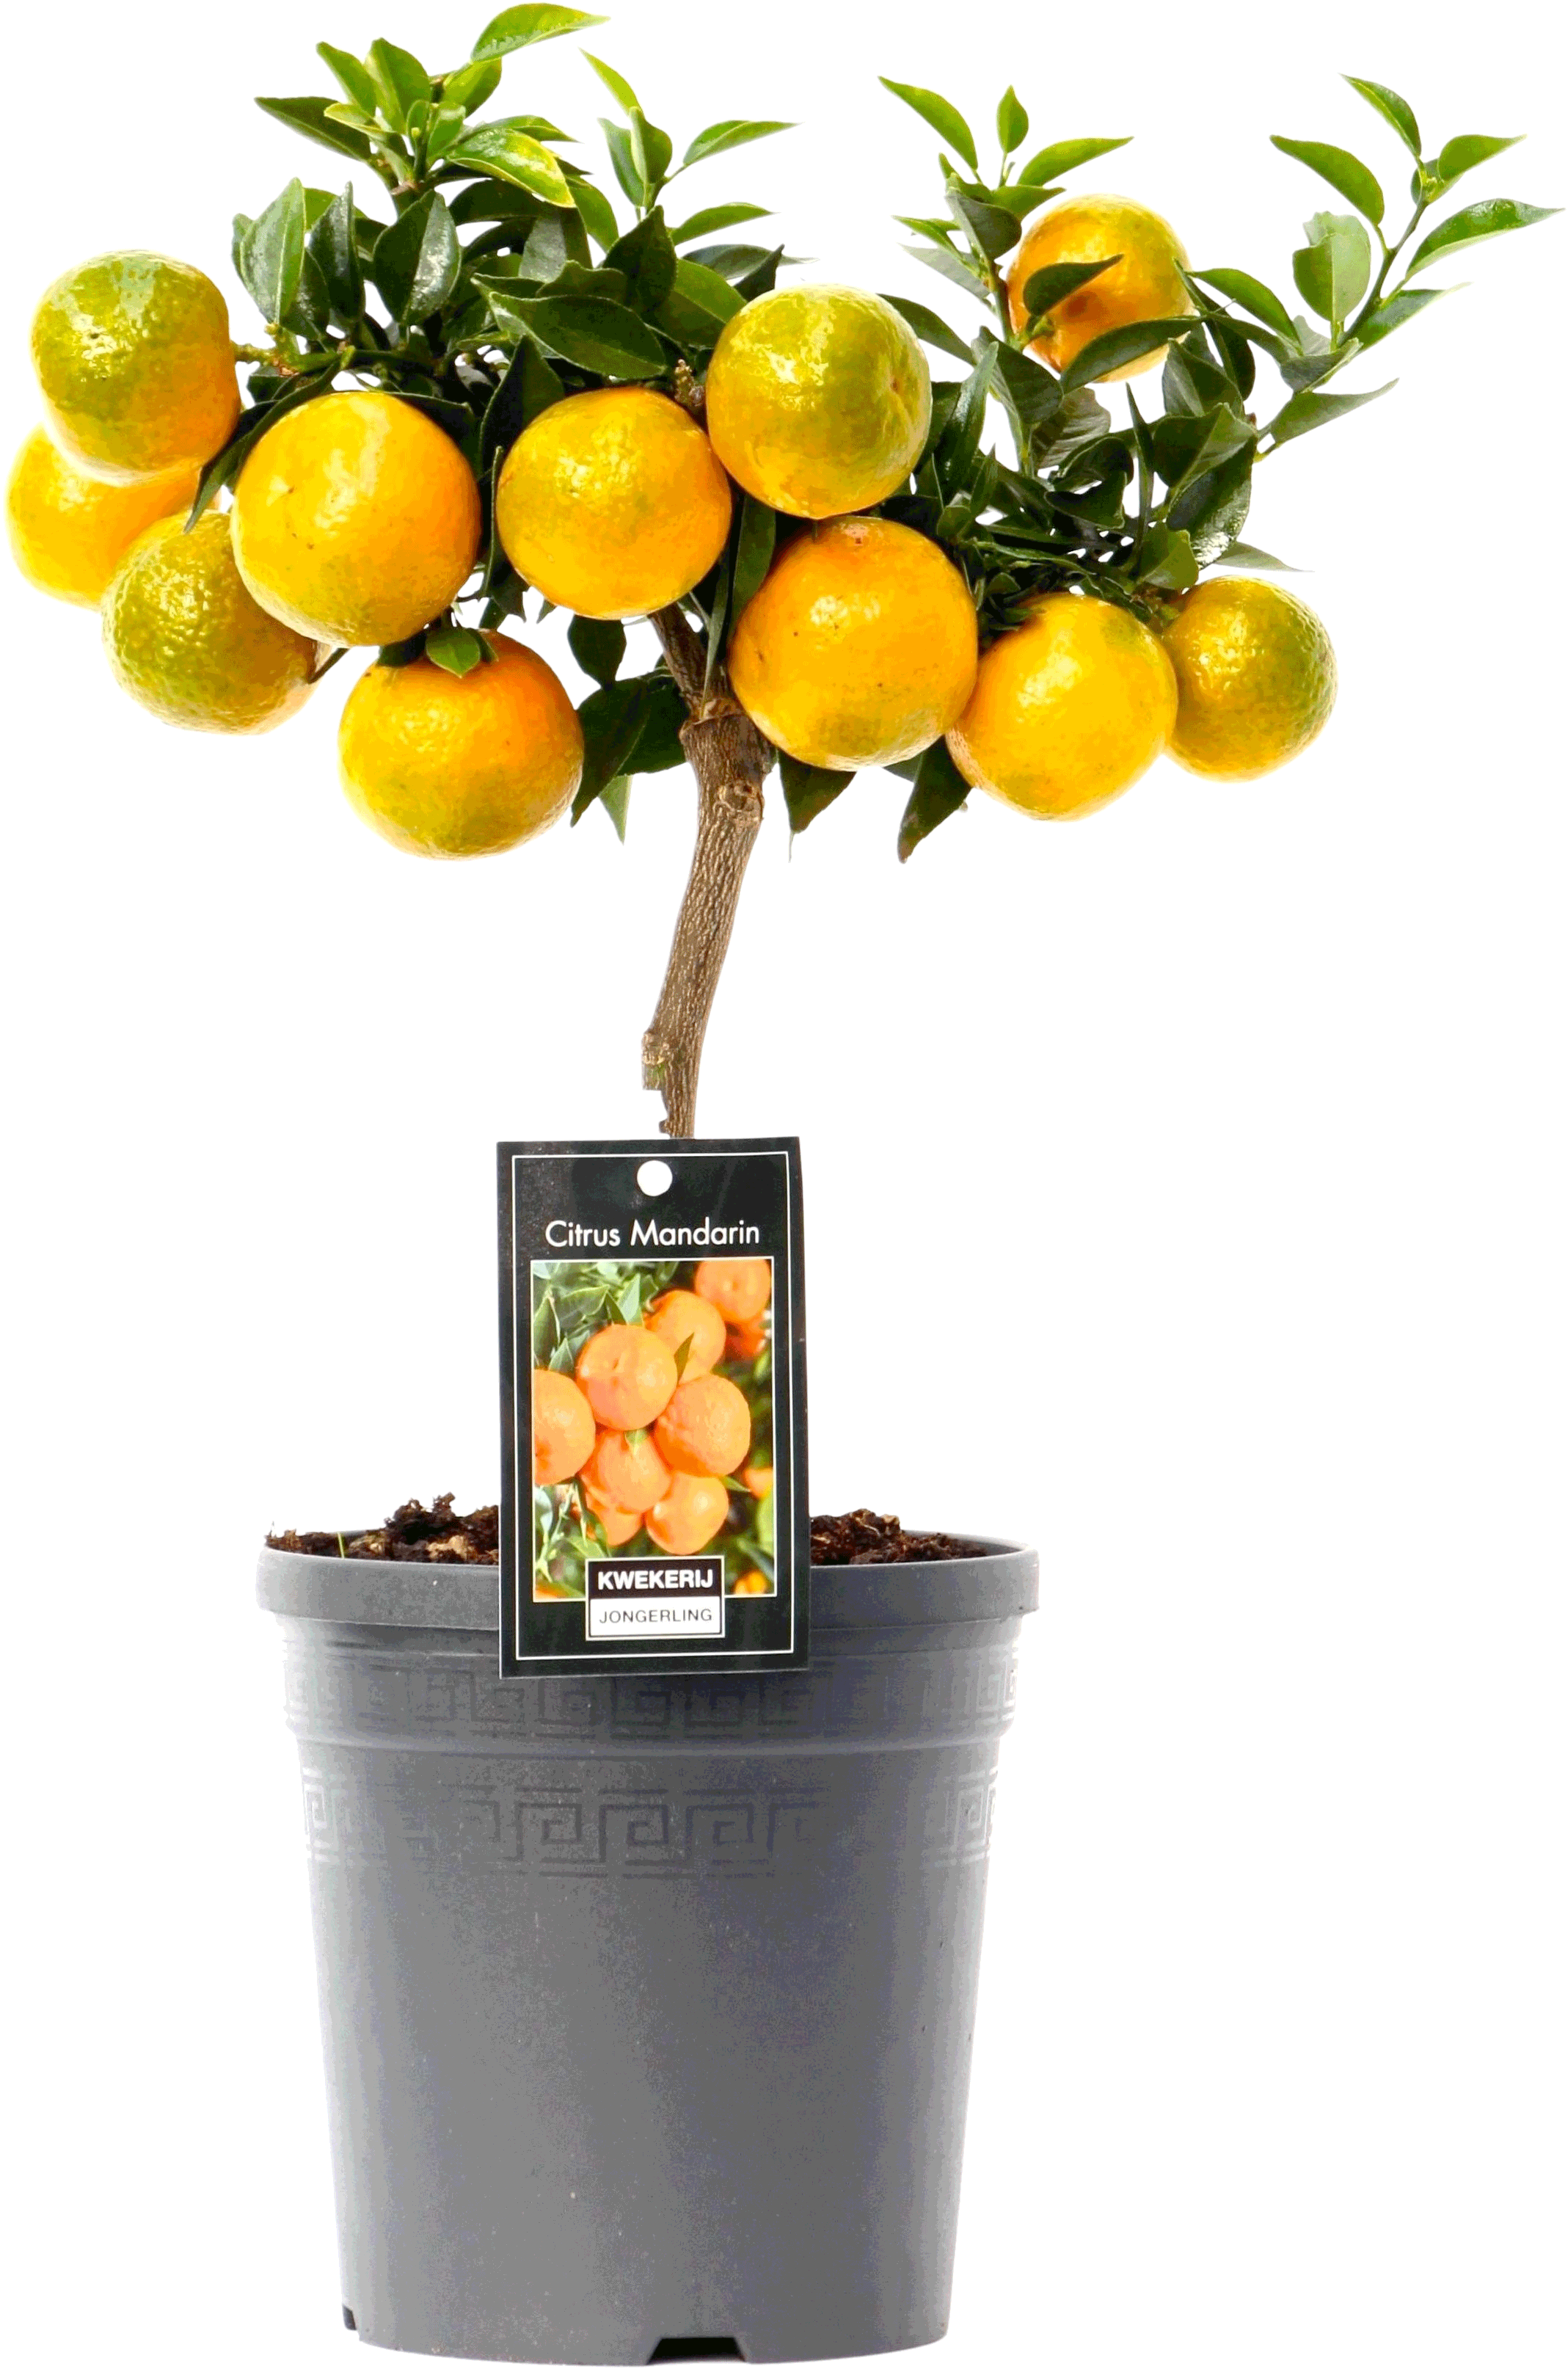 Citrus Mandarin transparant vooraanzicht